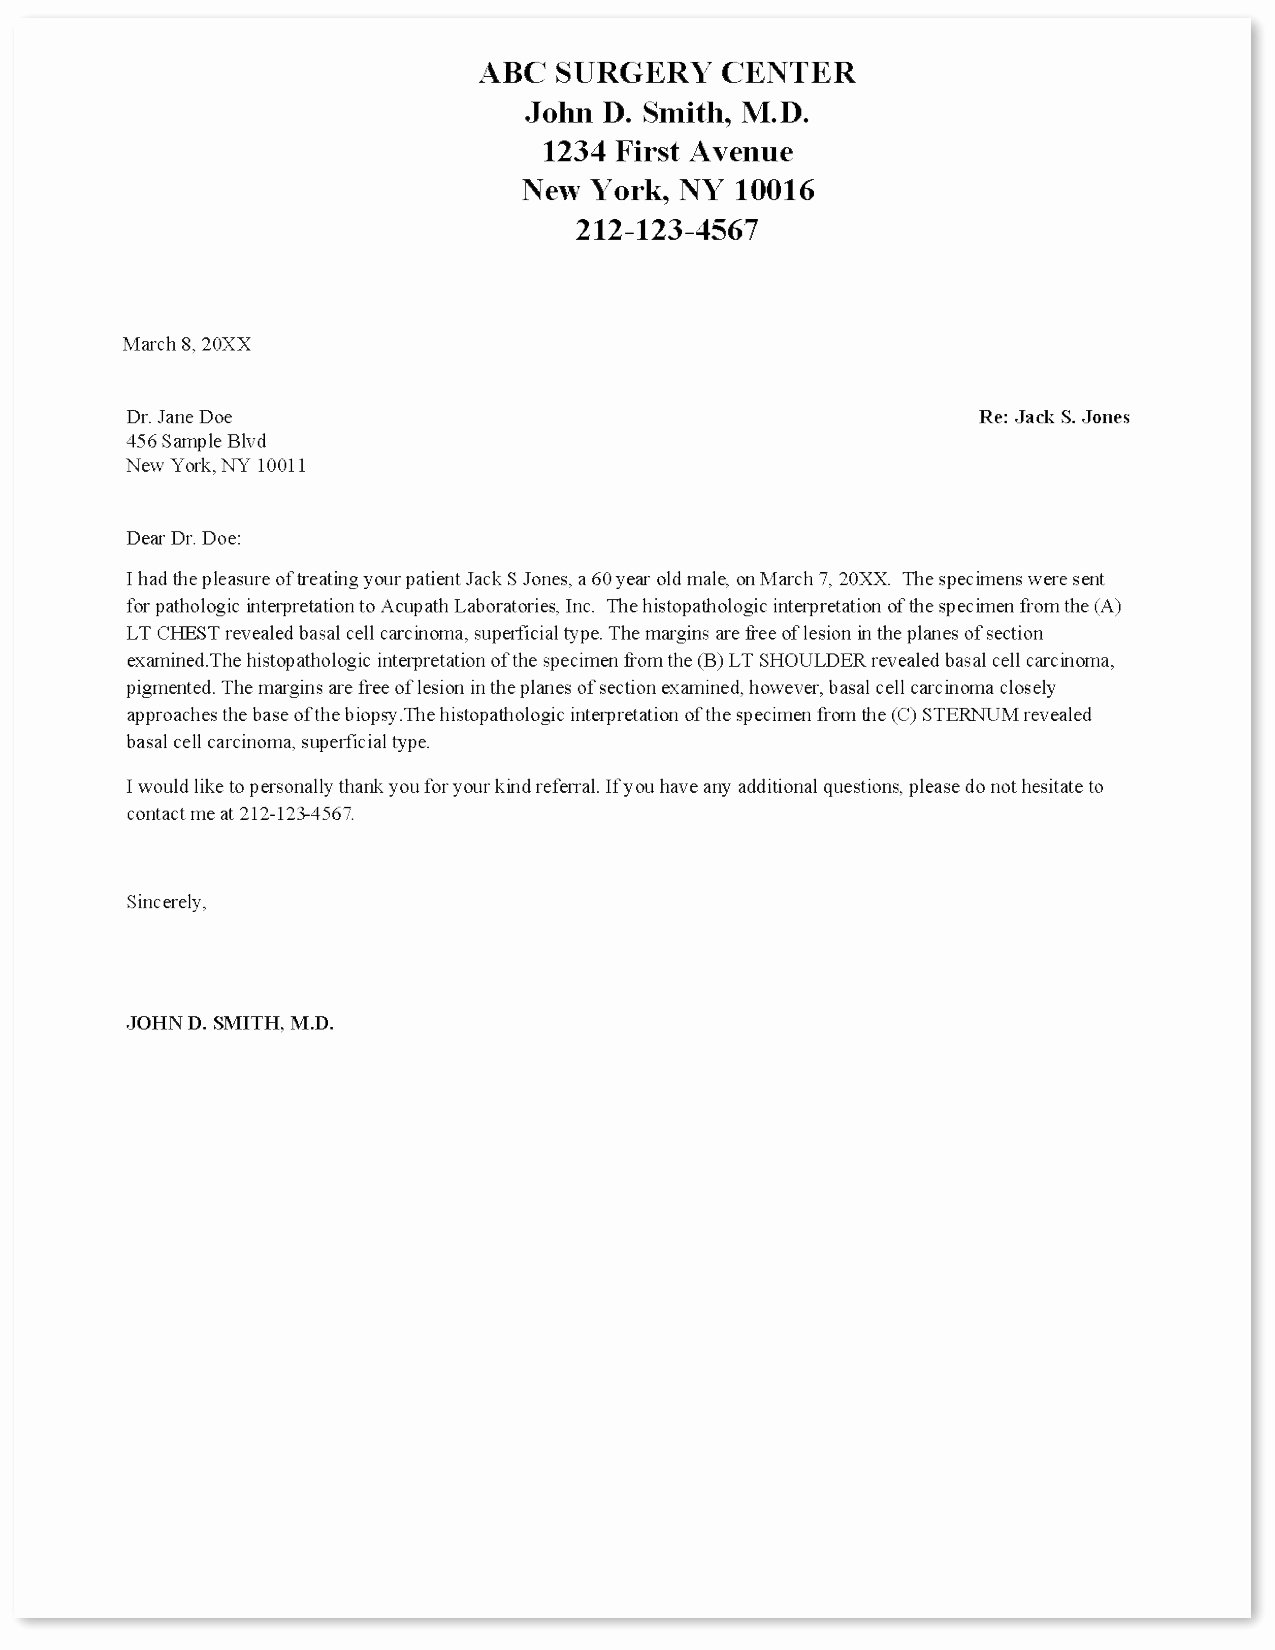 Sample Letter to Patient Unique Acupath Laboratories Inc